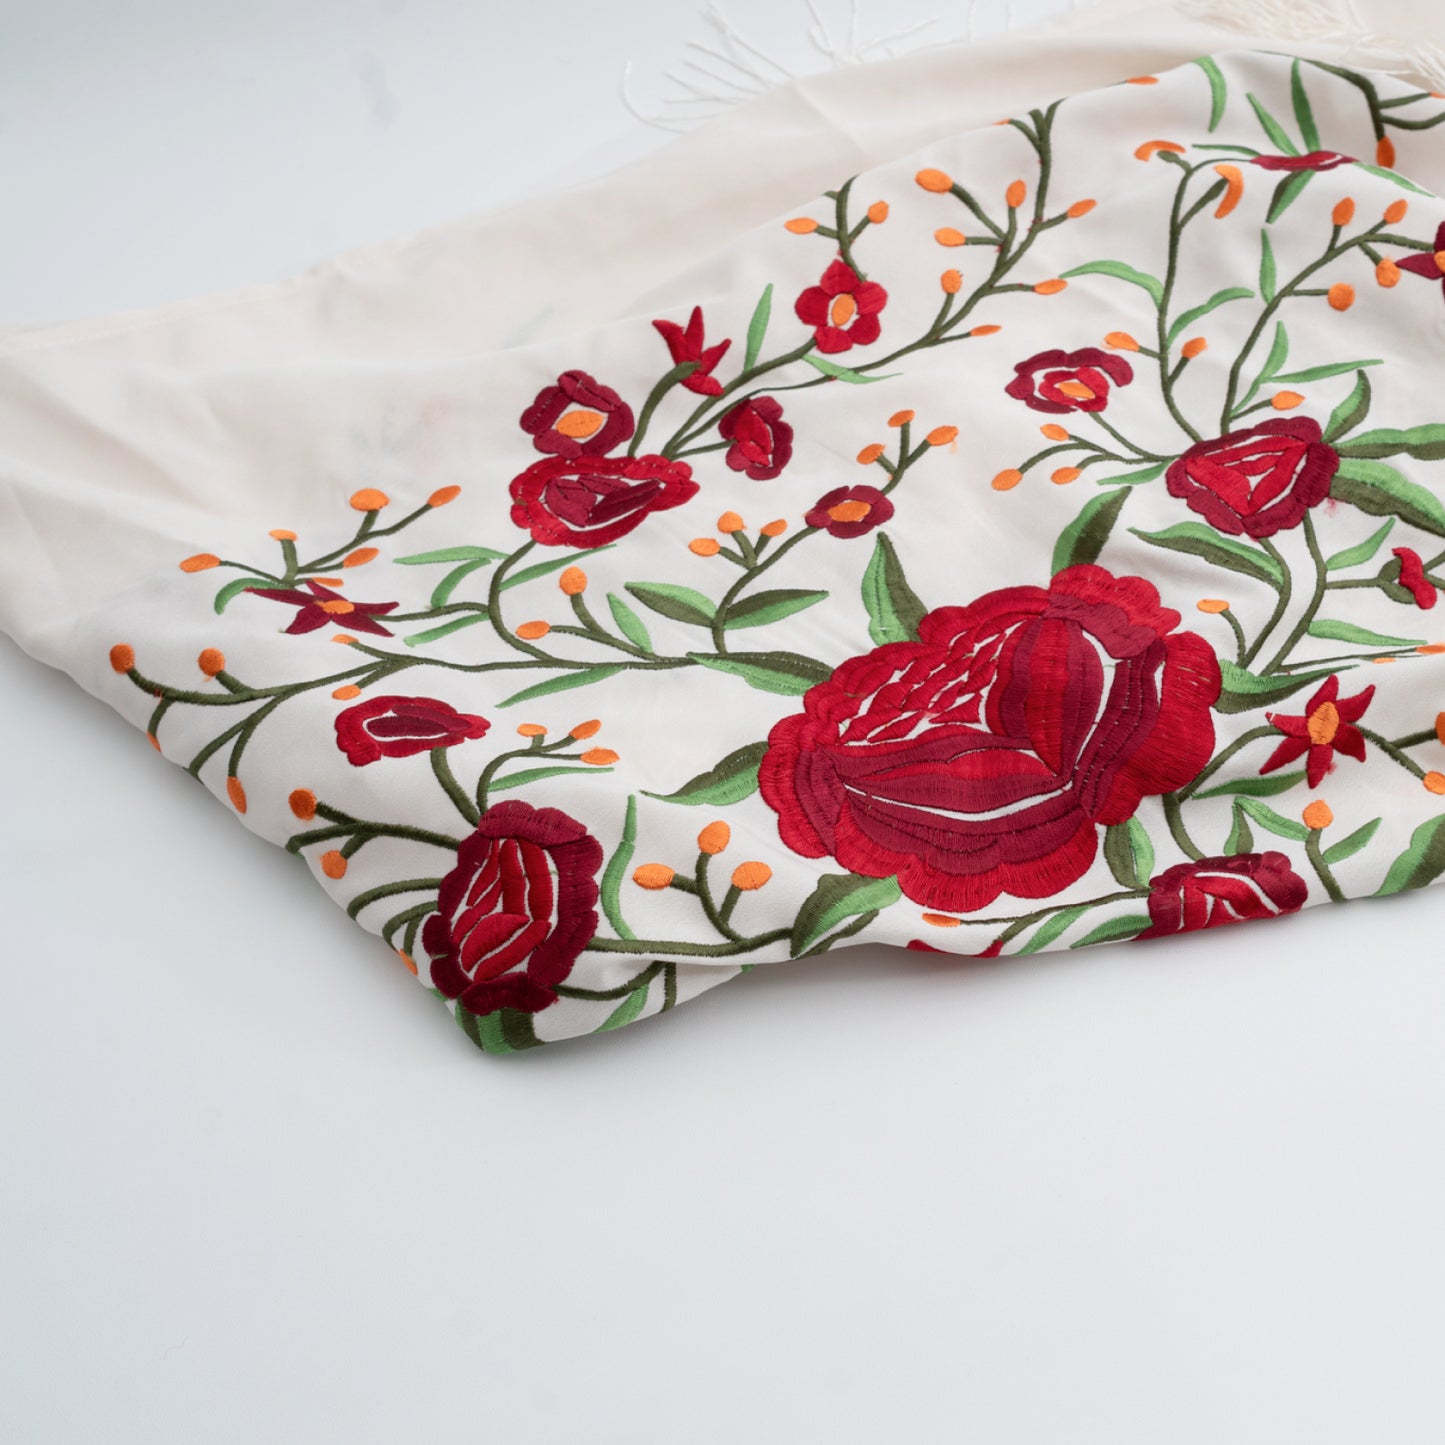 White floral embroidered mantoncillo shawl in crespon.